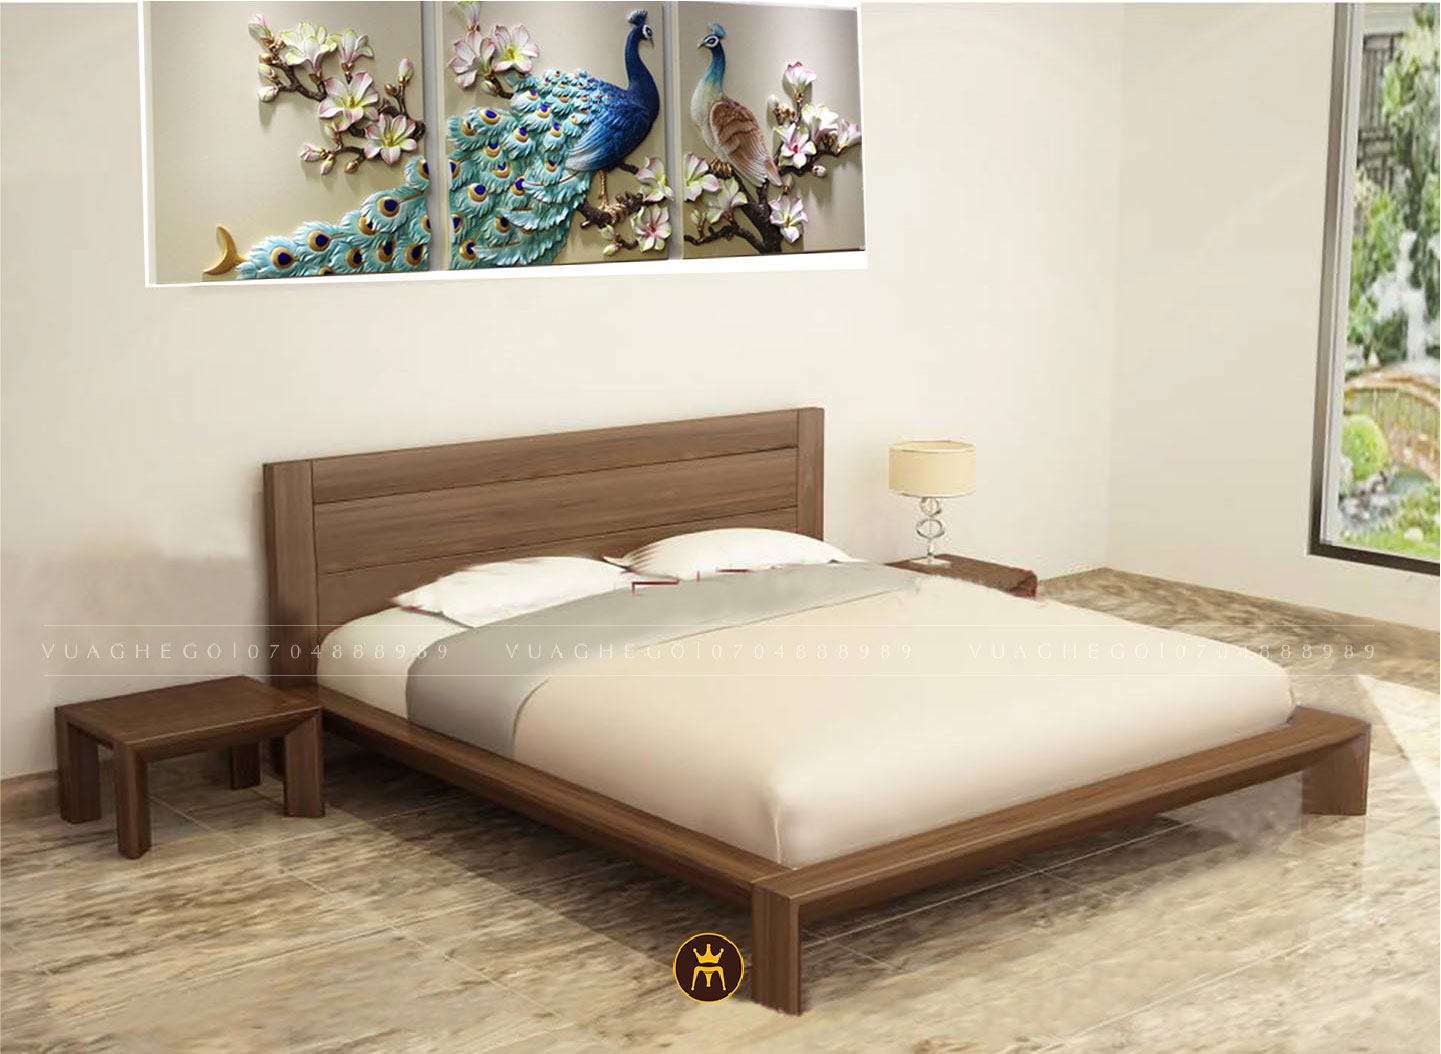 Các mẫu giường ngủ gỗ sồi cho không gian phòng hiện đại